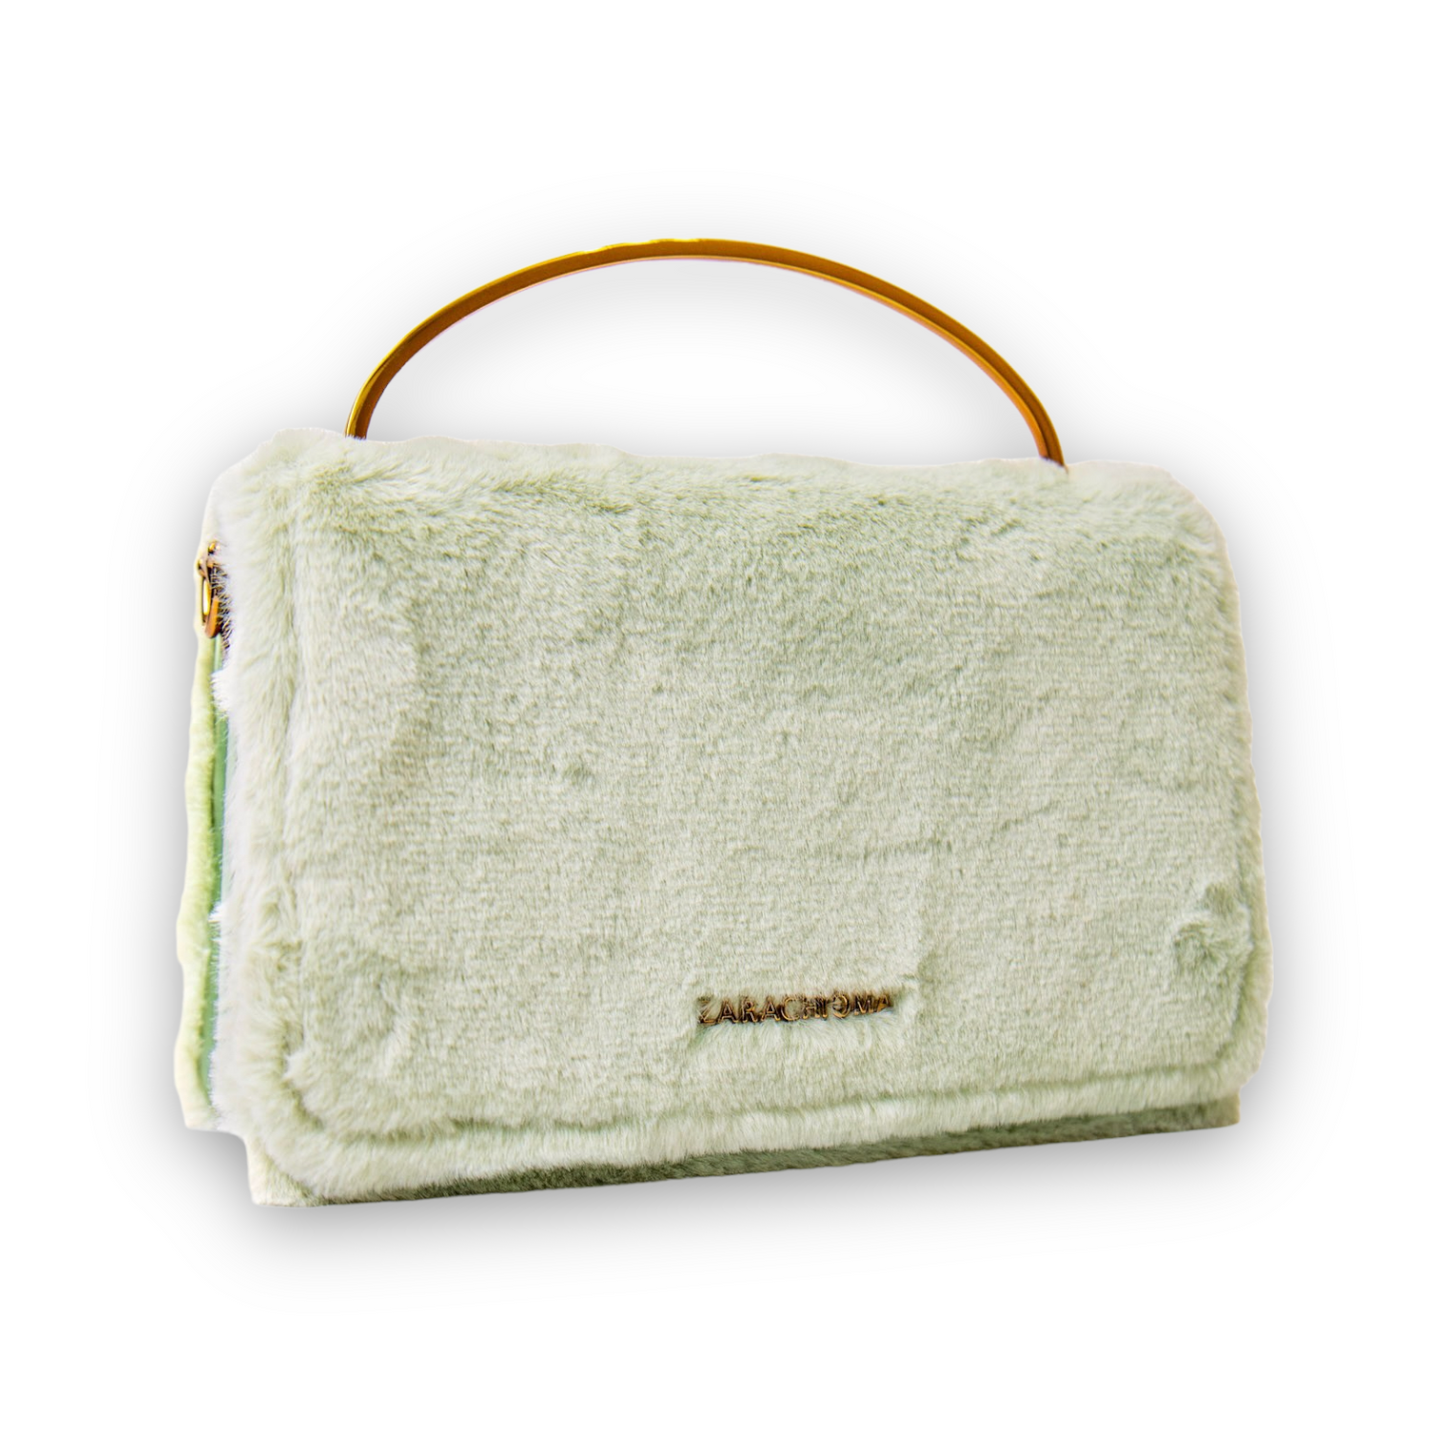 Winnie Mini Front Flap Top Handle bag in Seafoam green mint rabbit fur